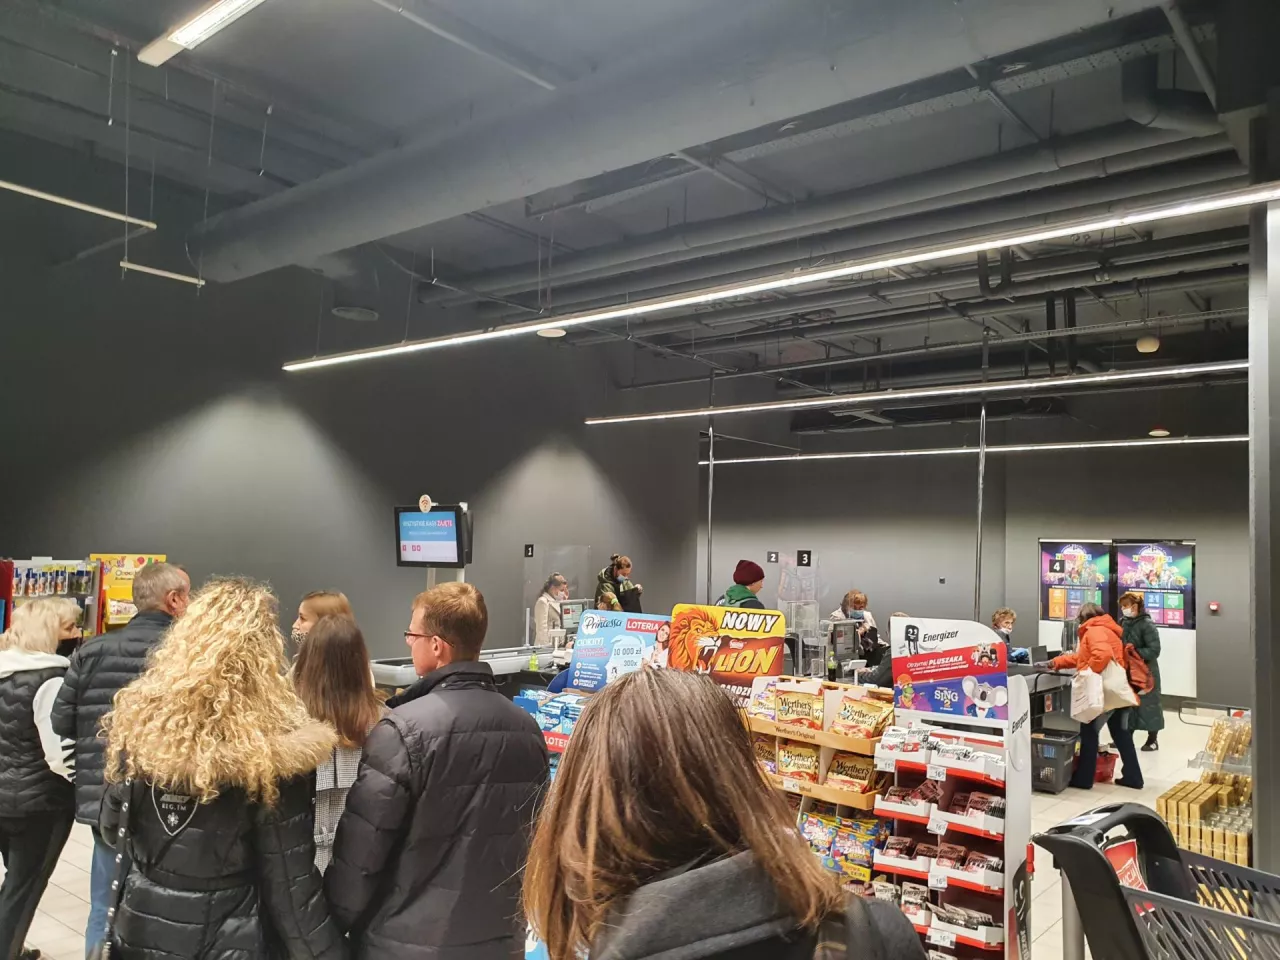 Na zdj. hipermarket Carrefour w warszawskiej Galerii Mokotów w trakcie remodelingu (fot. wiadomoscihandlowe.pl)